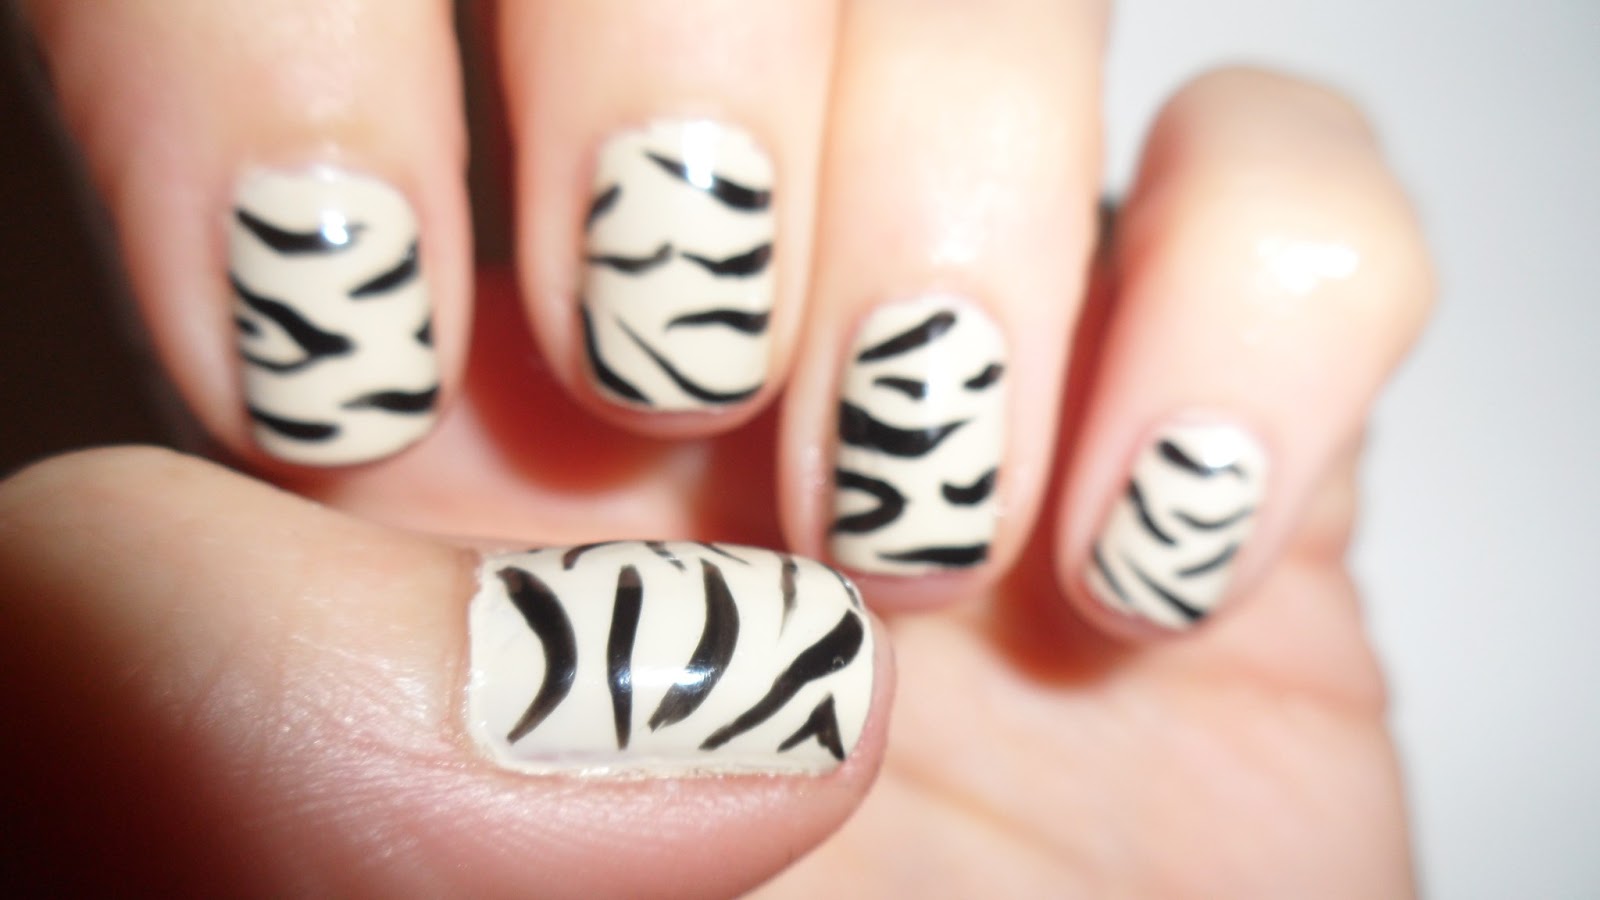 Zebra print nail art